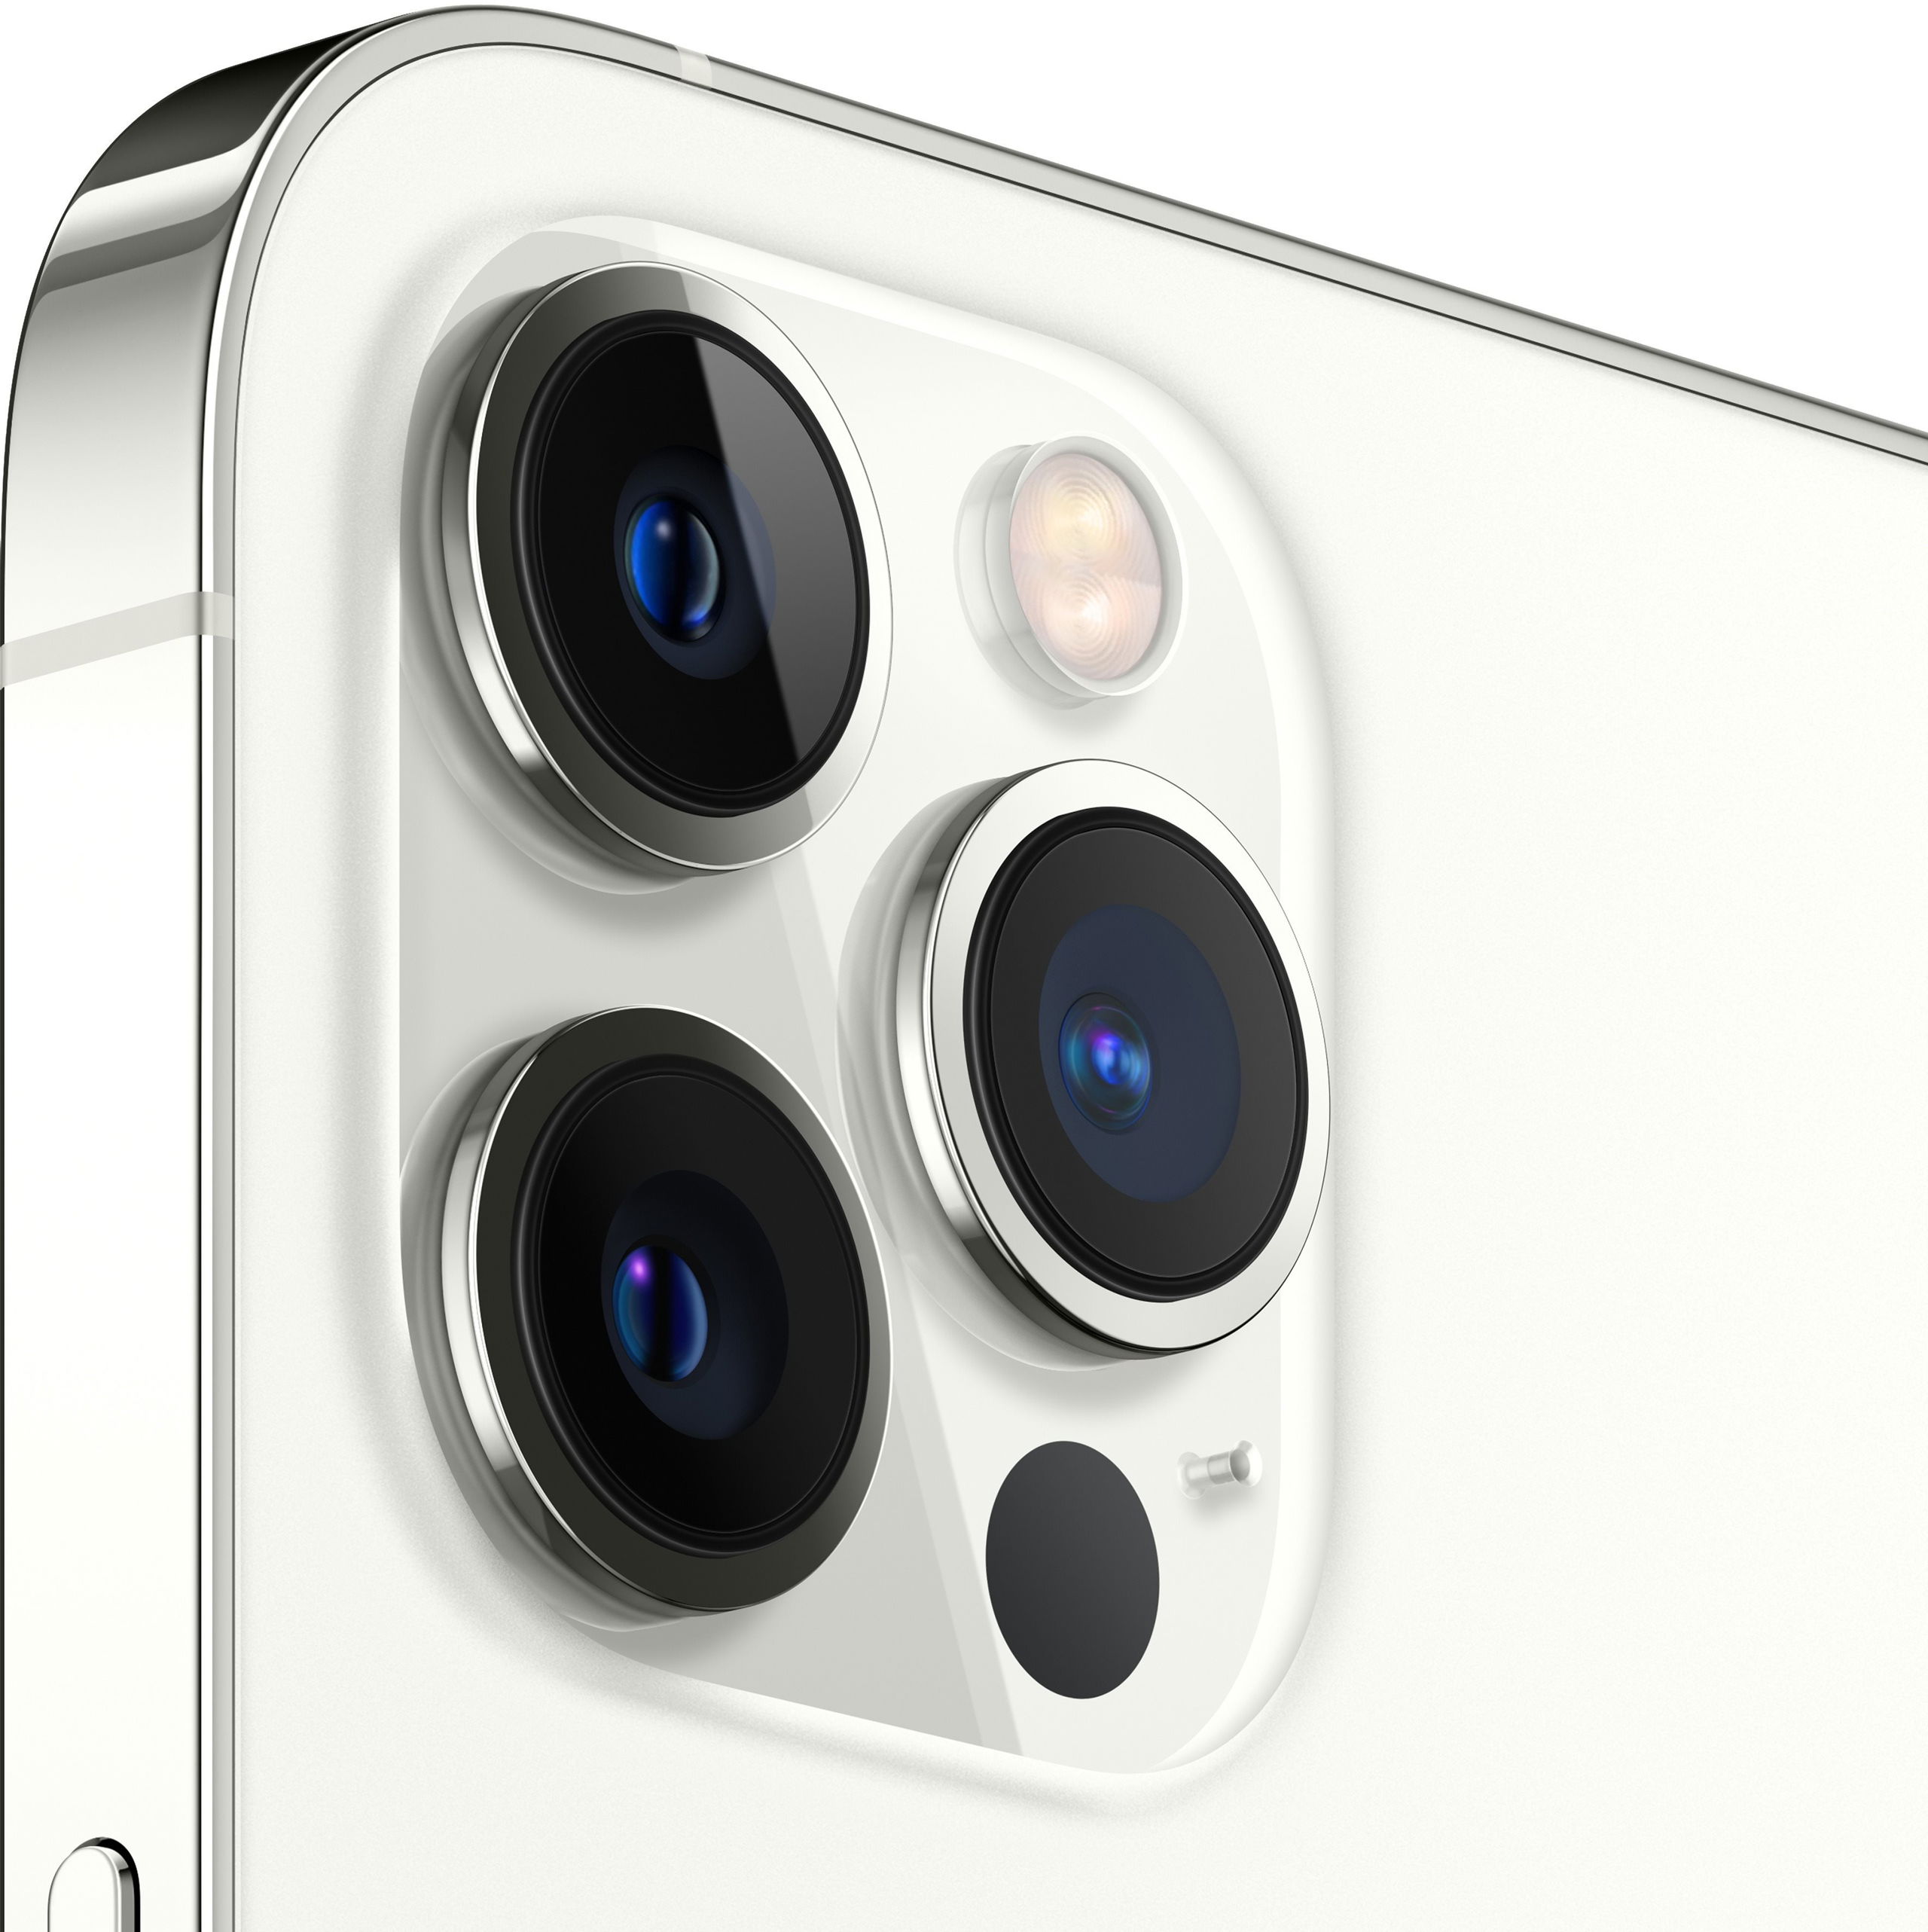 iPhone 12 Pro Max 256GB silver - Mobile Phone | alza.de